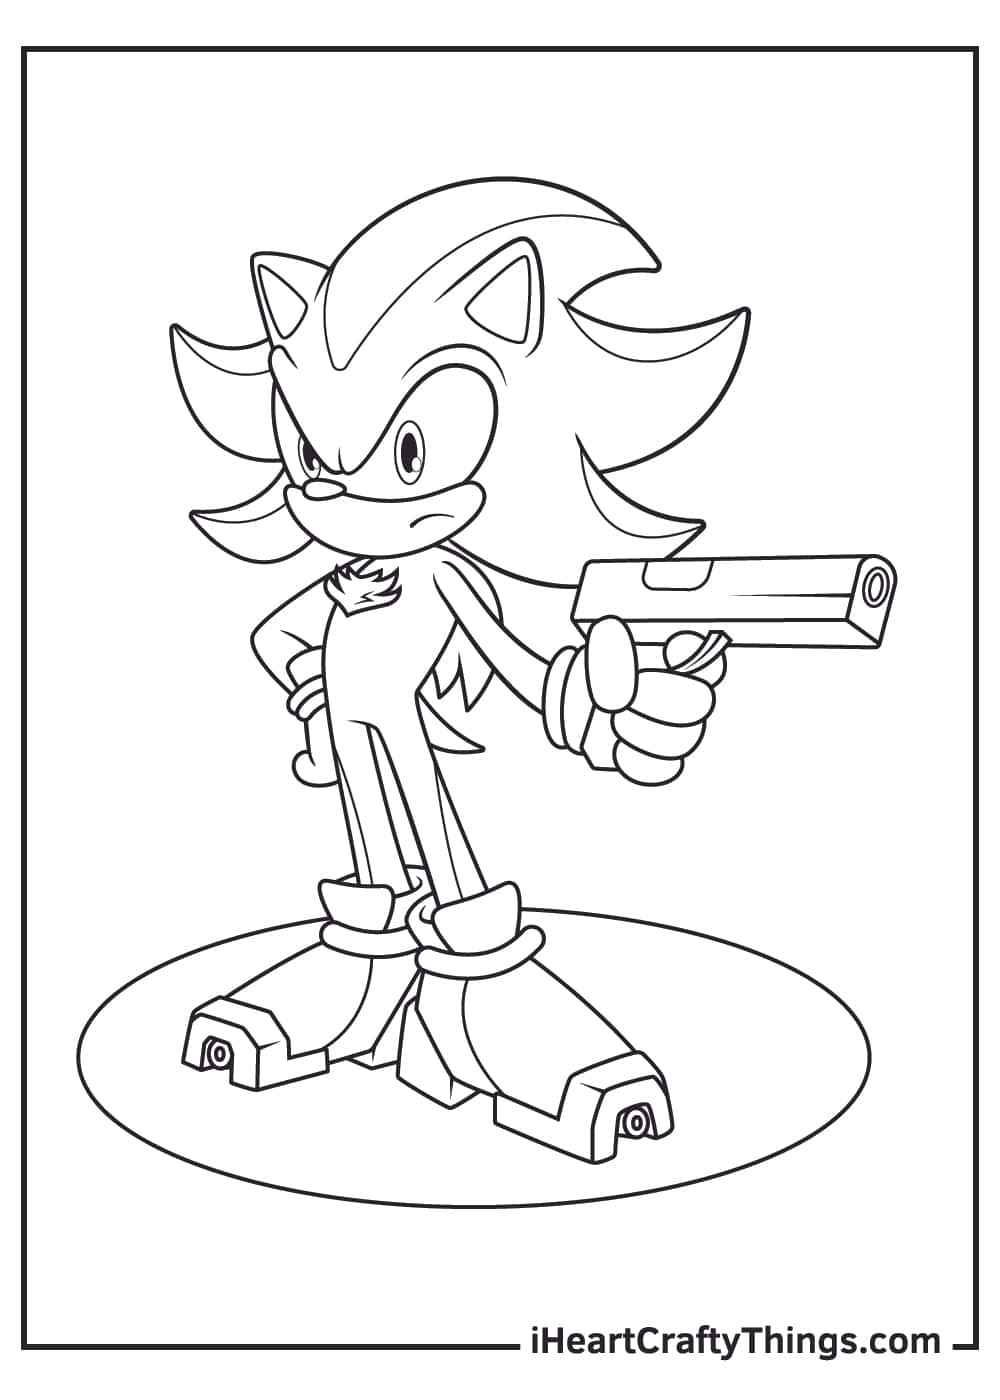 Sonicmålar Shadow Med En Pistolbild.